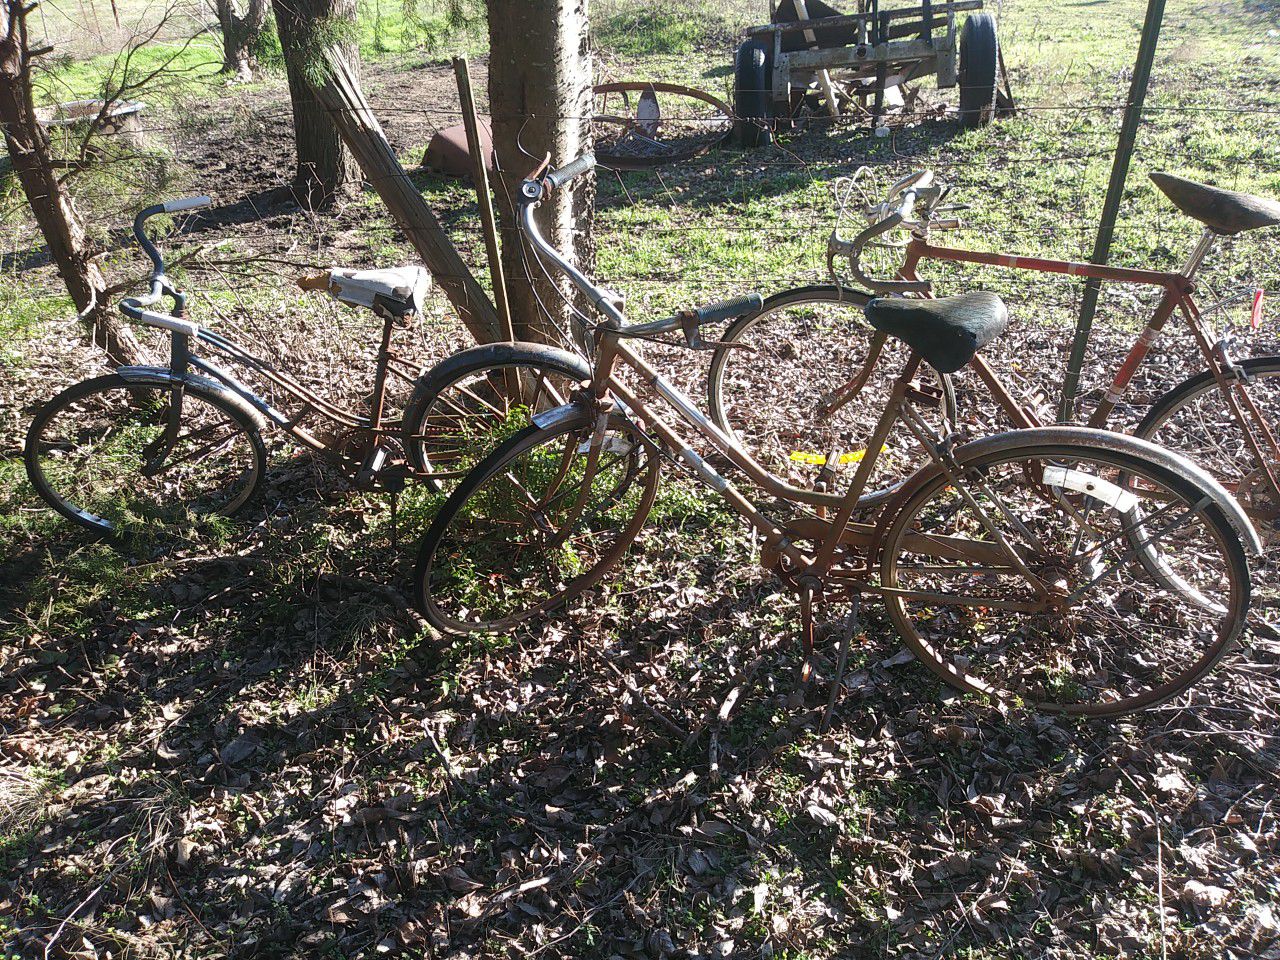 2 Vintage Bicycles